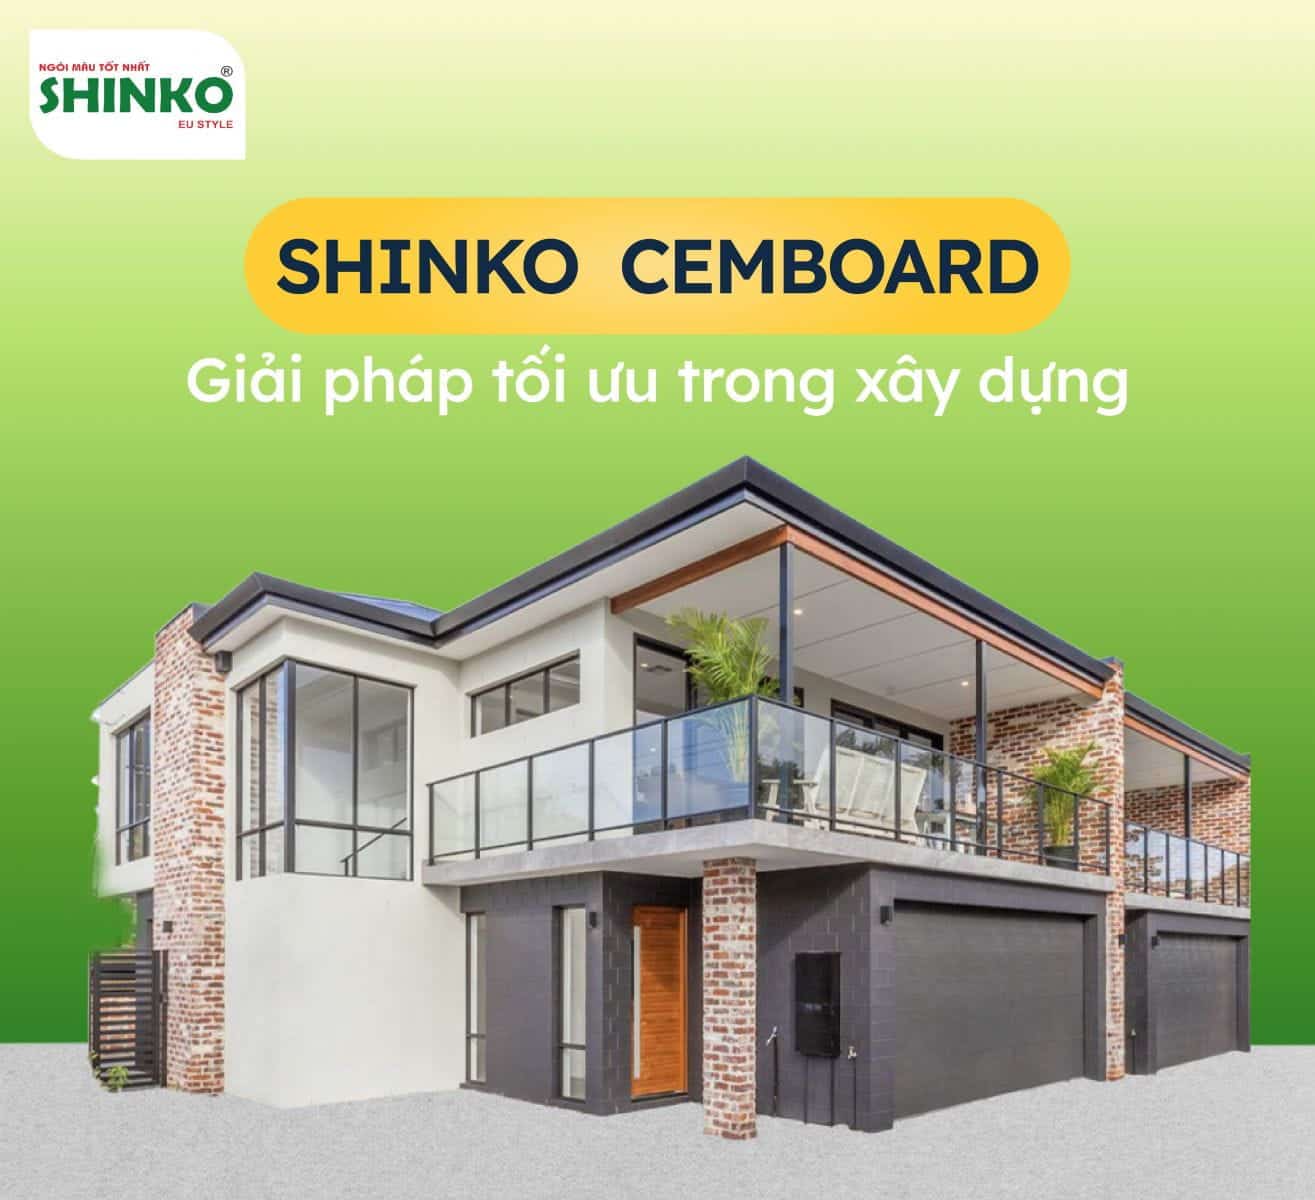 Shinko cemboard - giải pháp tối ưu để làm vách ngăn trong xây dựng